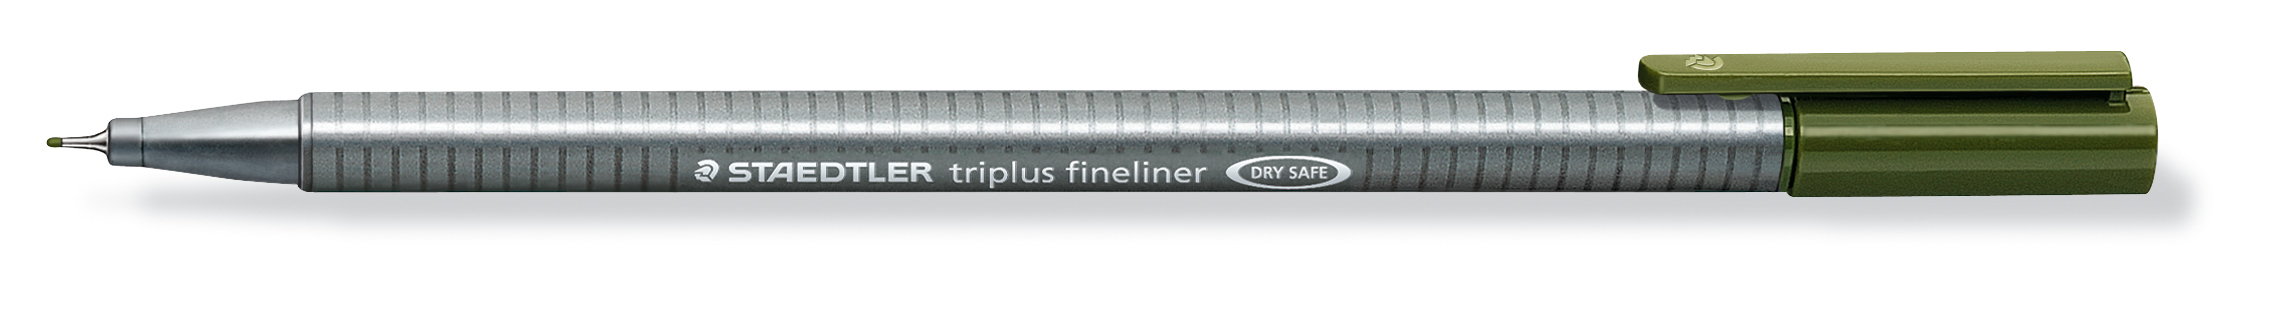 STAEDTLER Triplus Fineliner 0,3mm 334-57 oliv